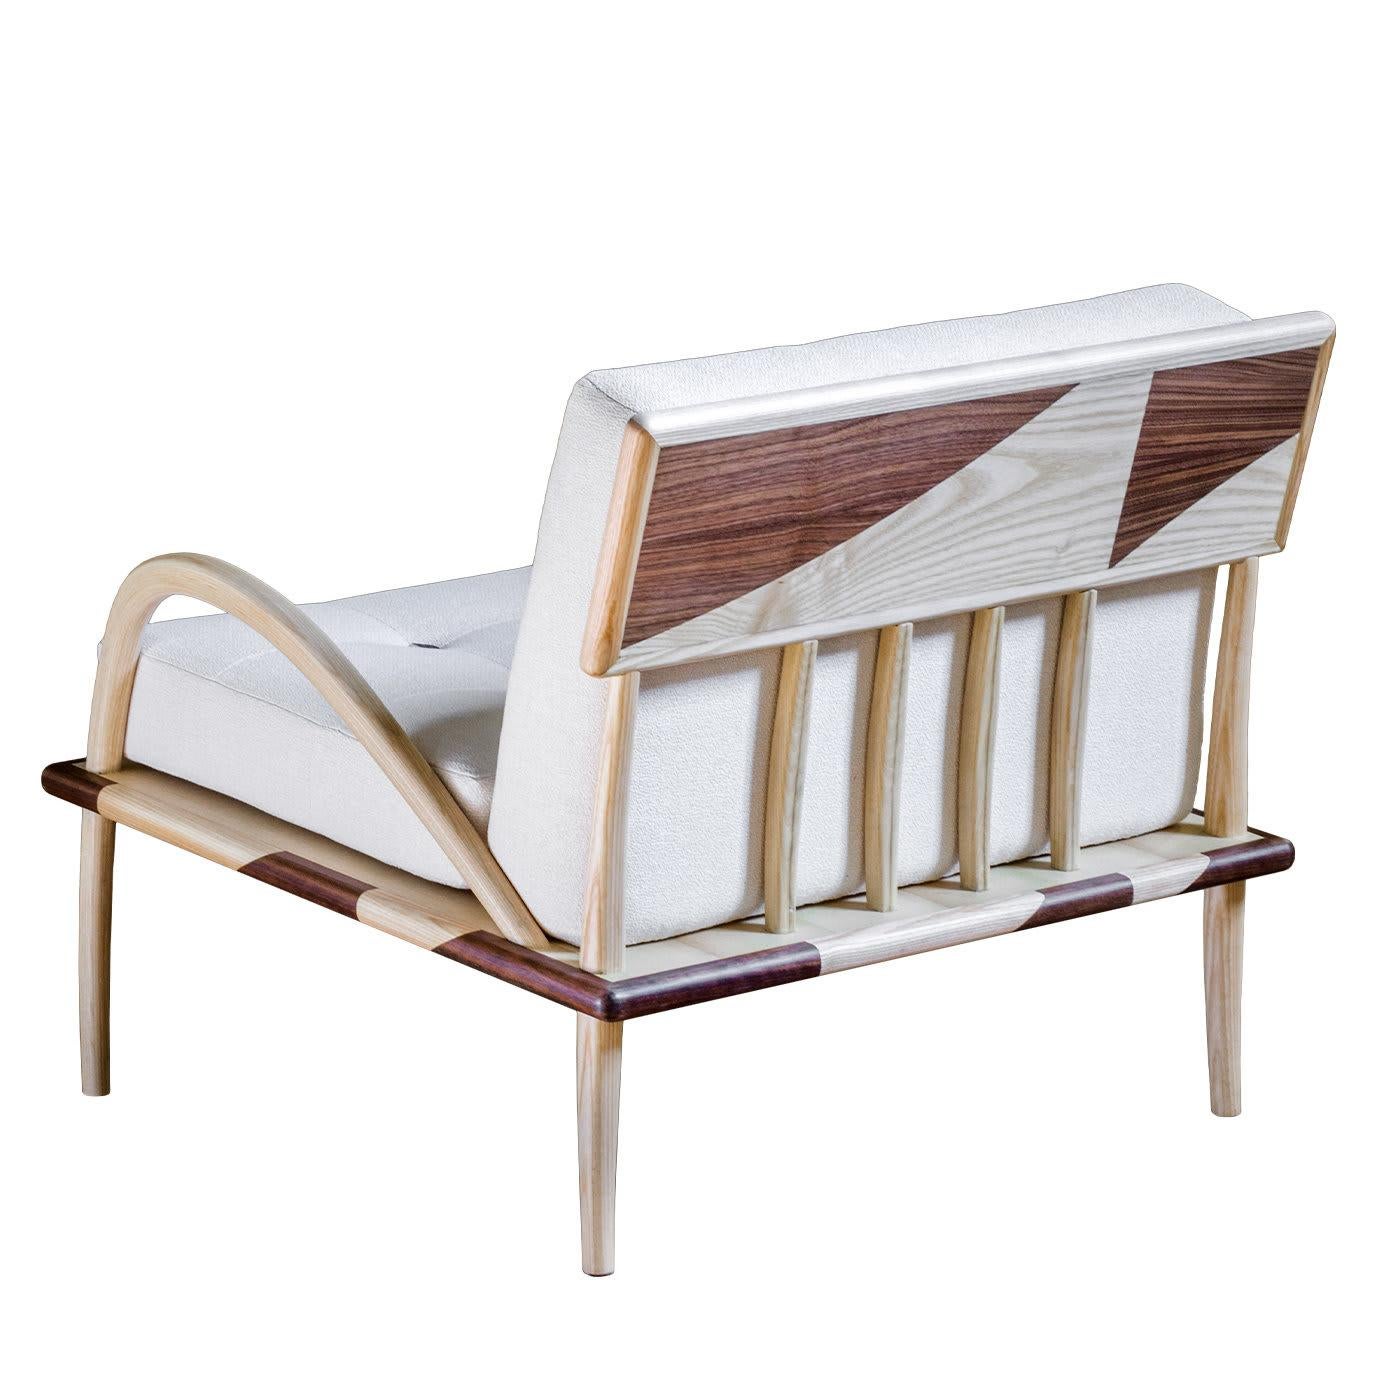 Ce fauteuil exquis est une vitrine de la maîtrise de la menuiserie, avec sa silhouette intrigante obtenue en mélangeant le frêne naturel et le noyer Canaletto. Équipé d'un coussin d'assise et de dossier en peluche recouvert d'un tissu blanc